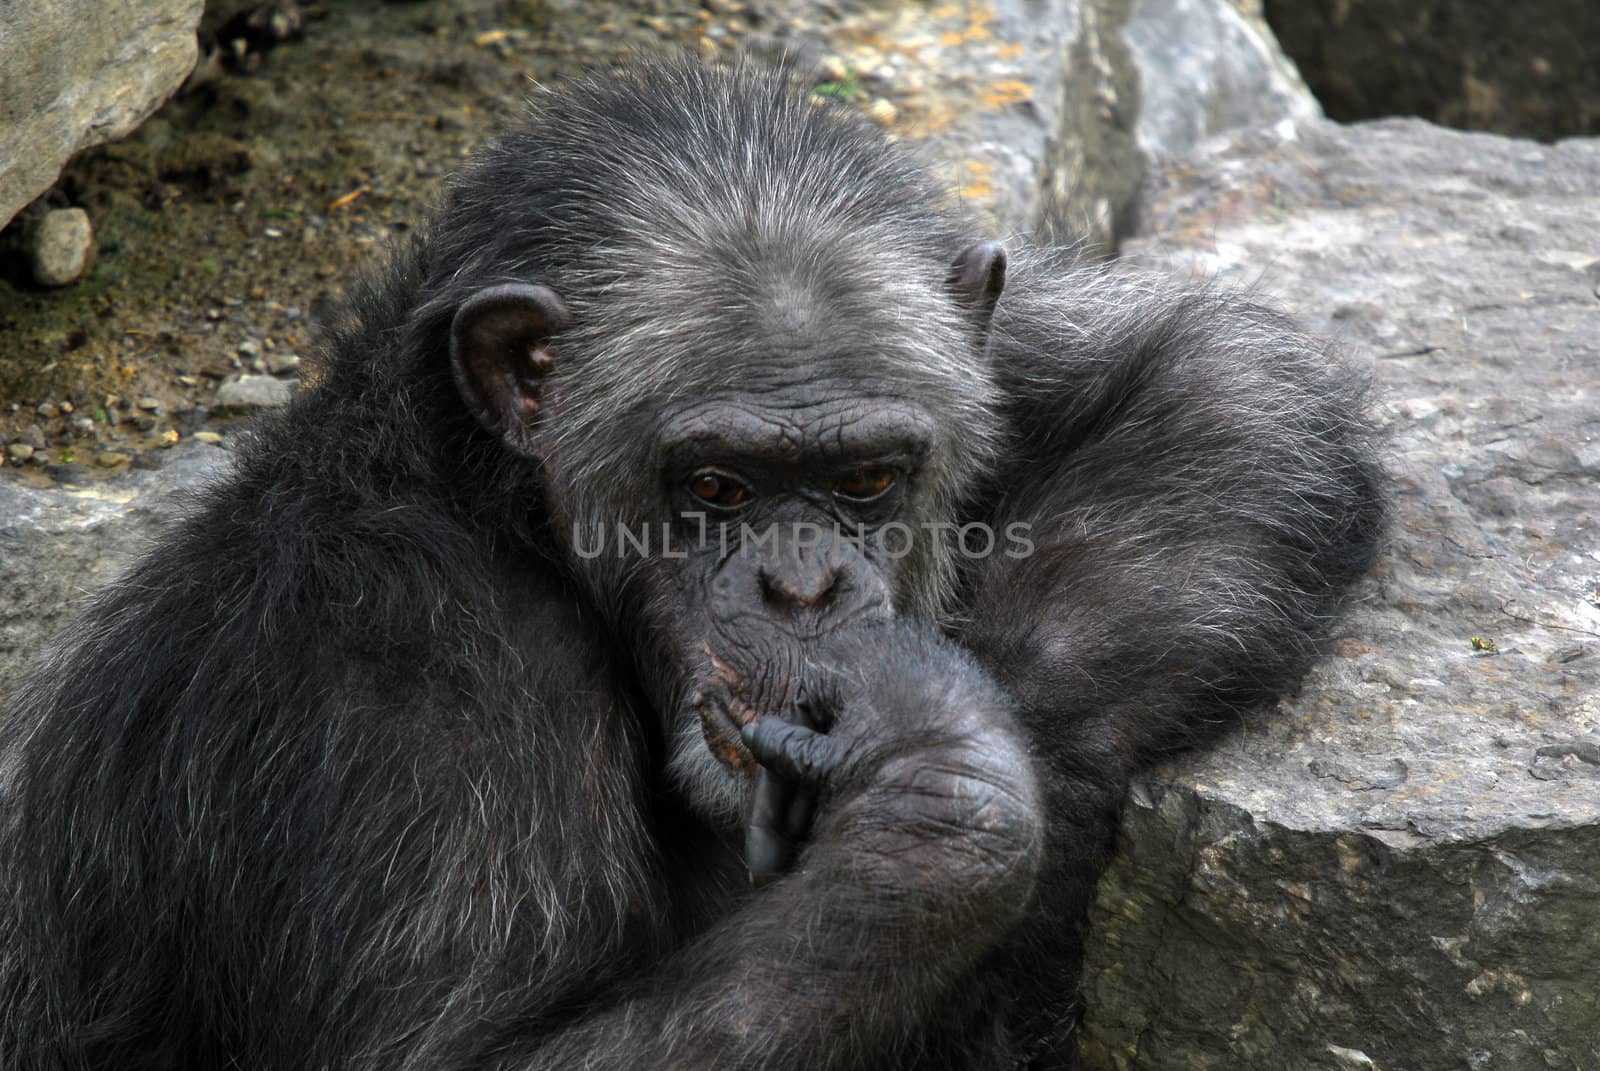 Common Chimpanzee by nialat